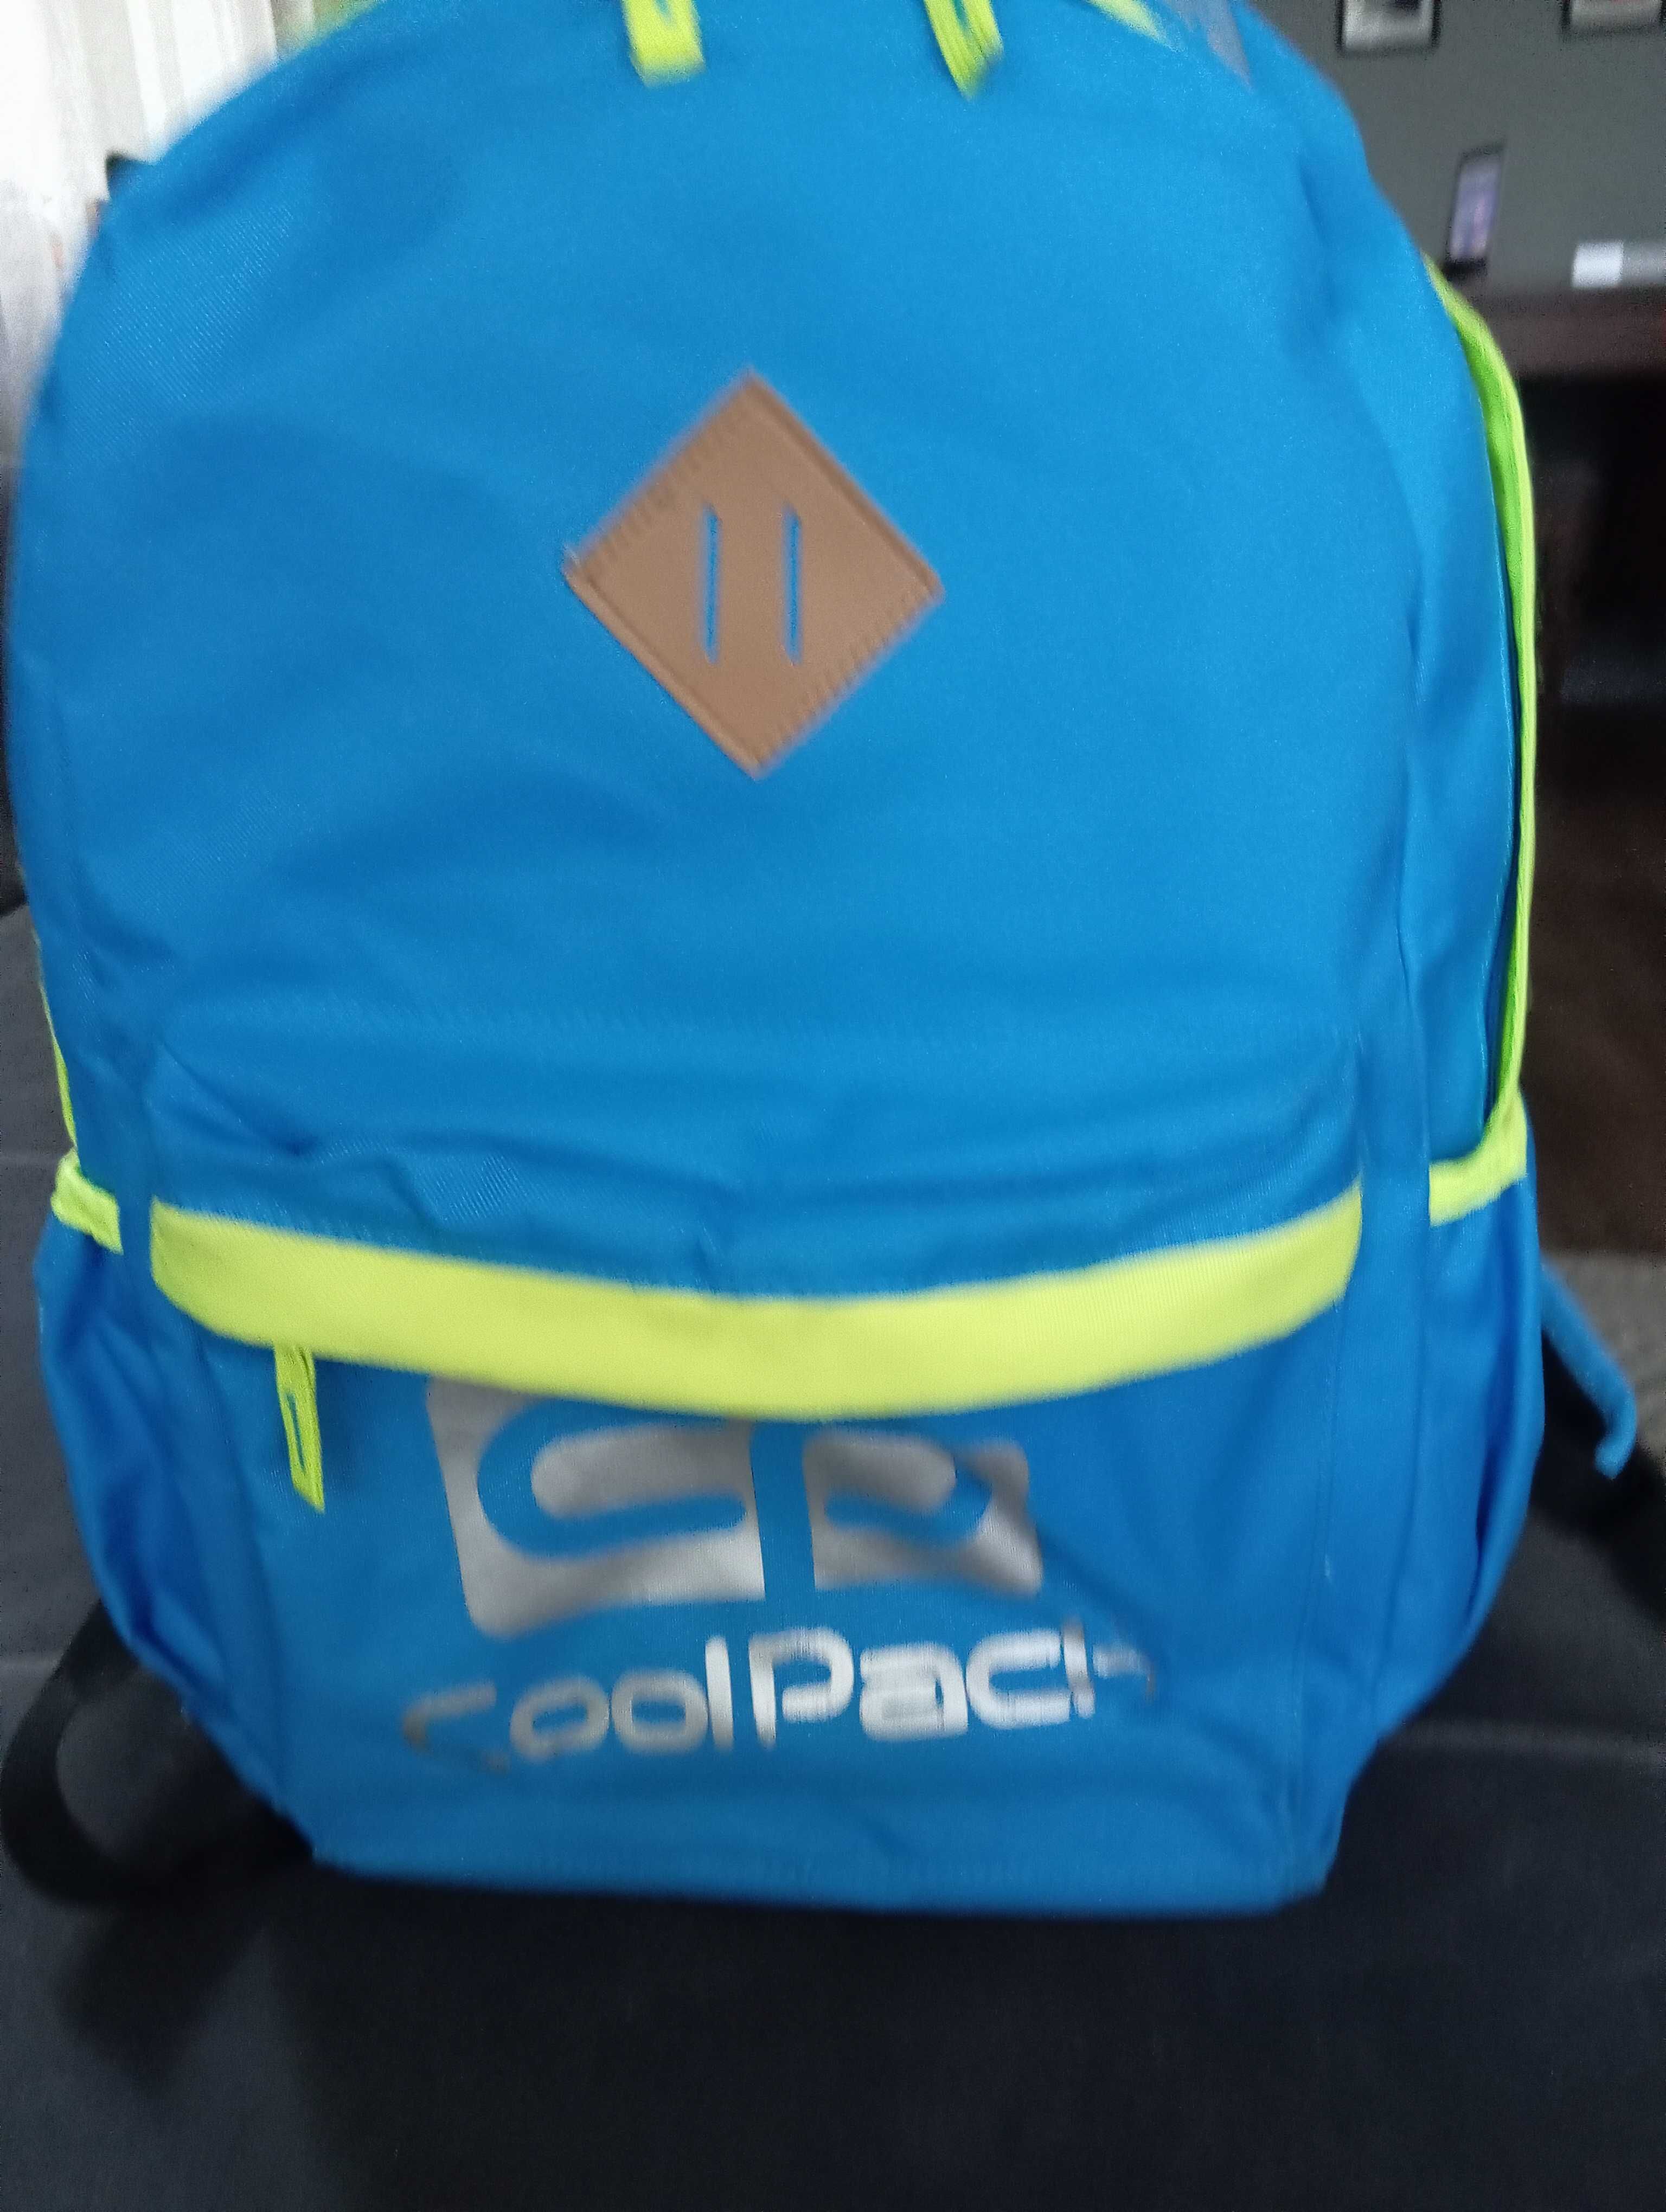 Plecak CoolPack lekki duzy